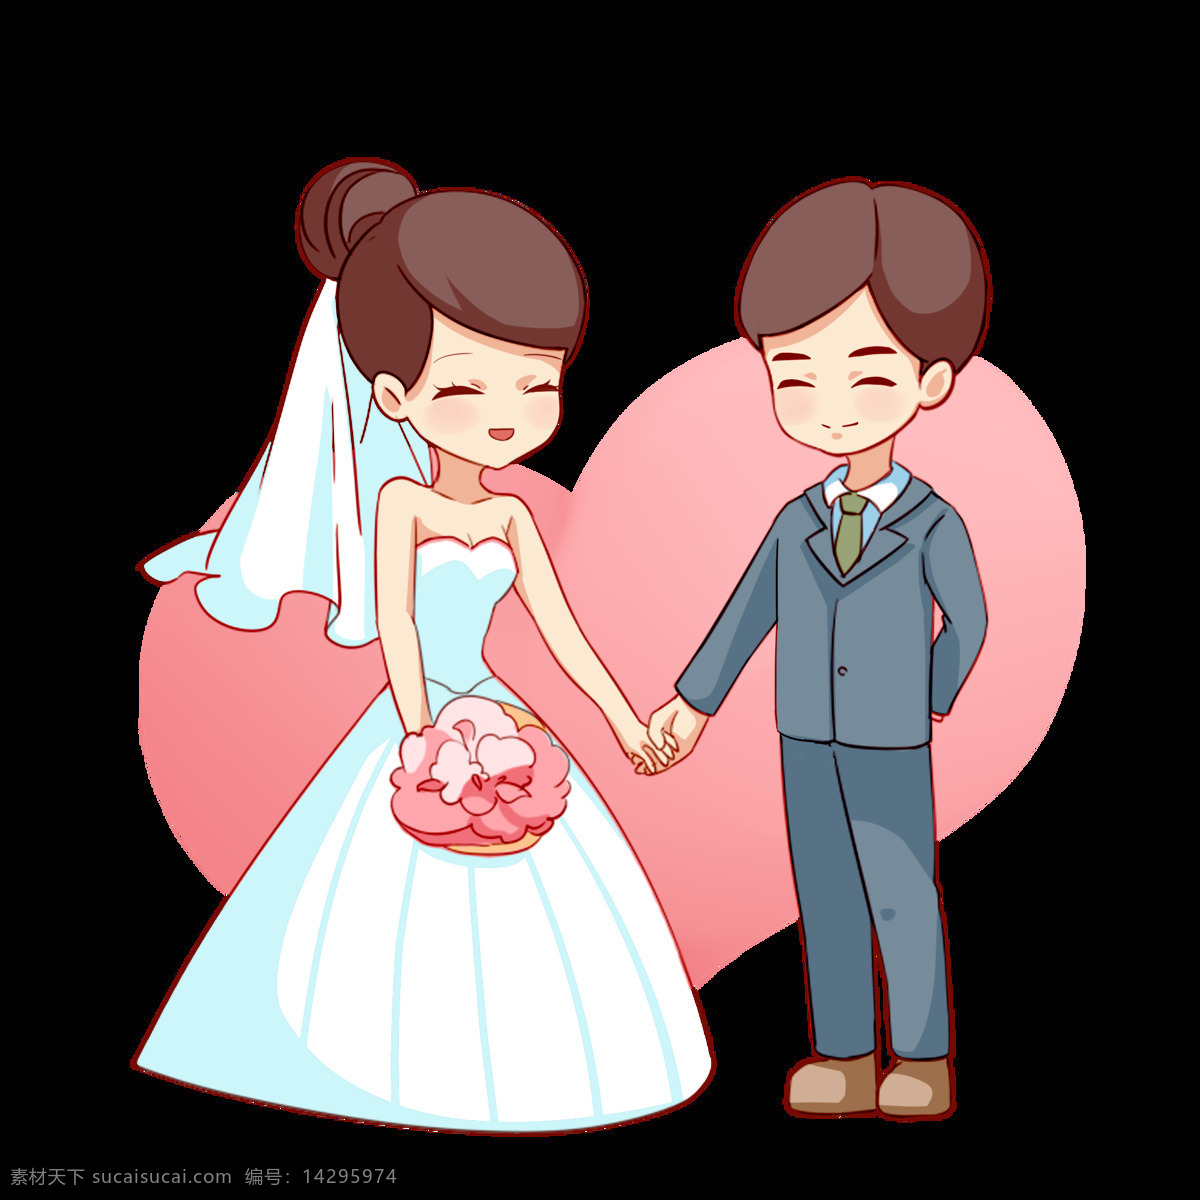 婚礼 人物 结婚 爱心 牵手 婚纱 卡通 png格式